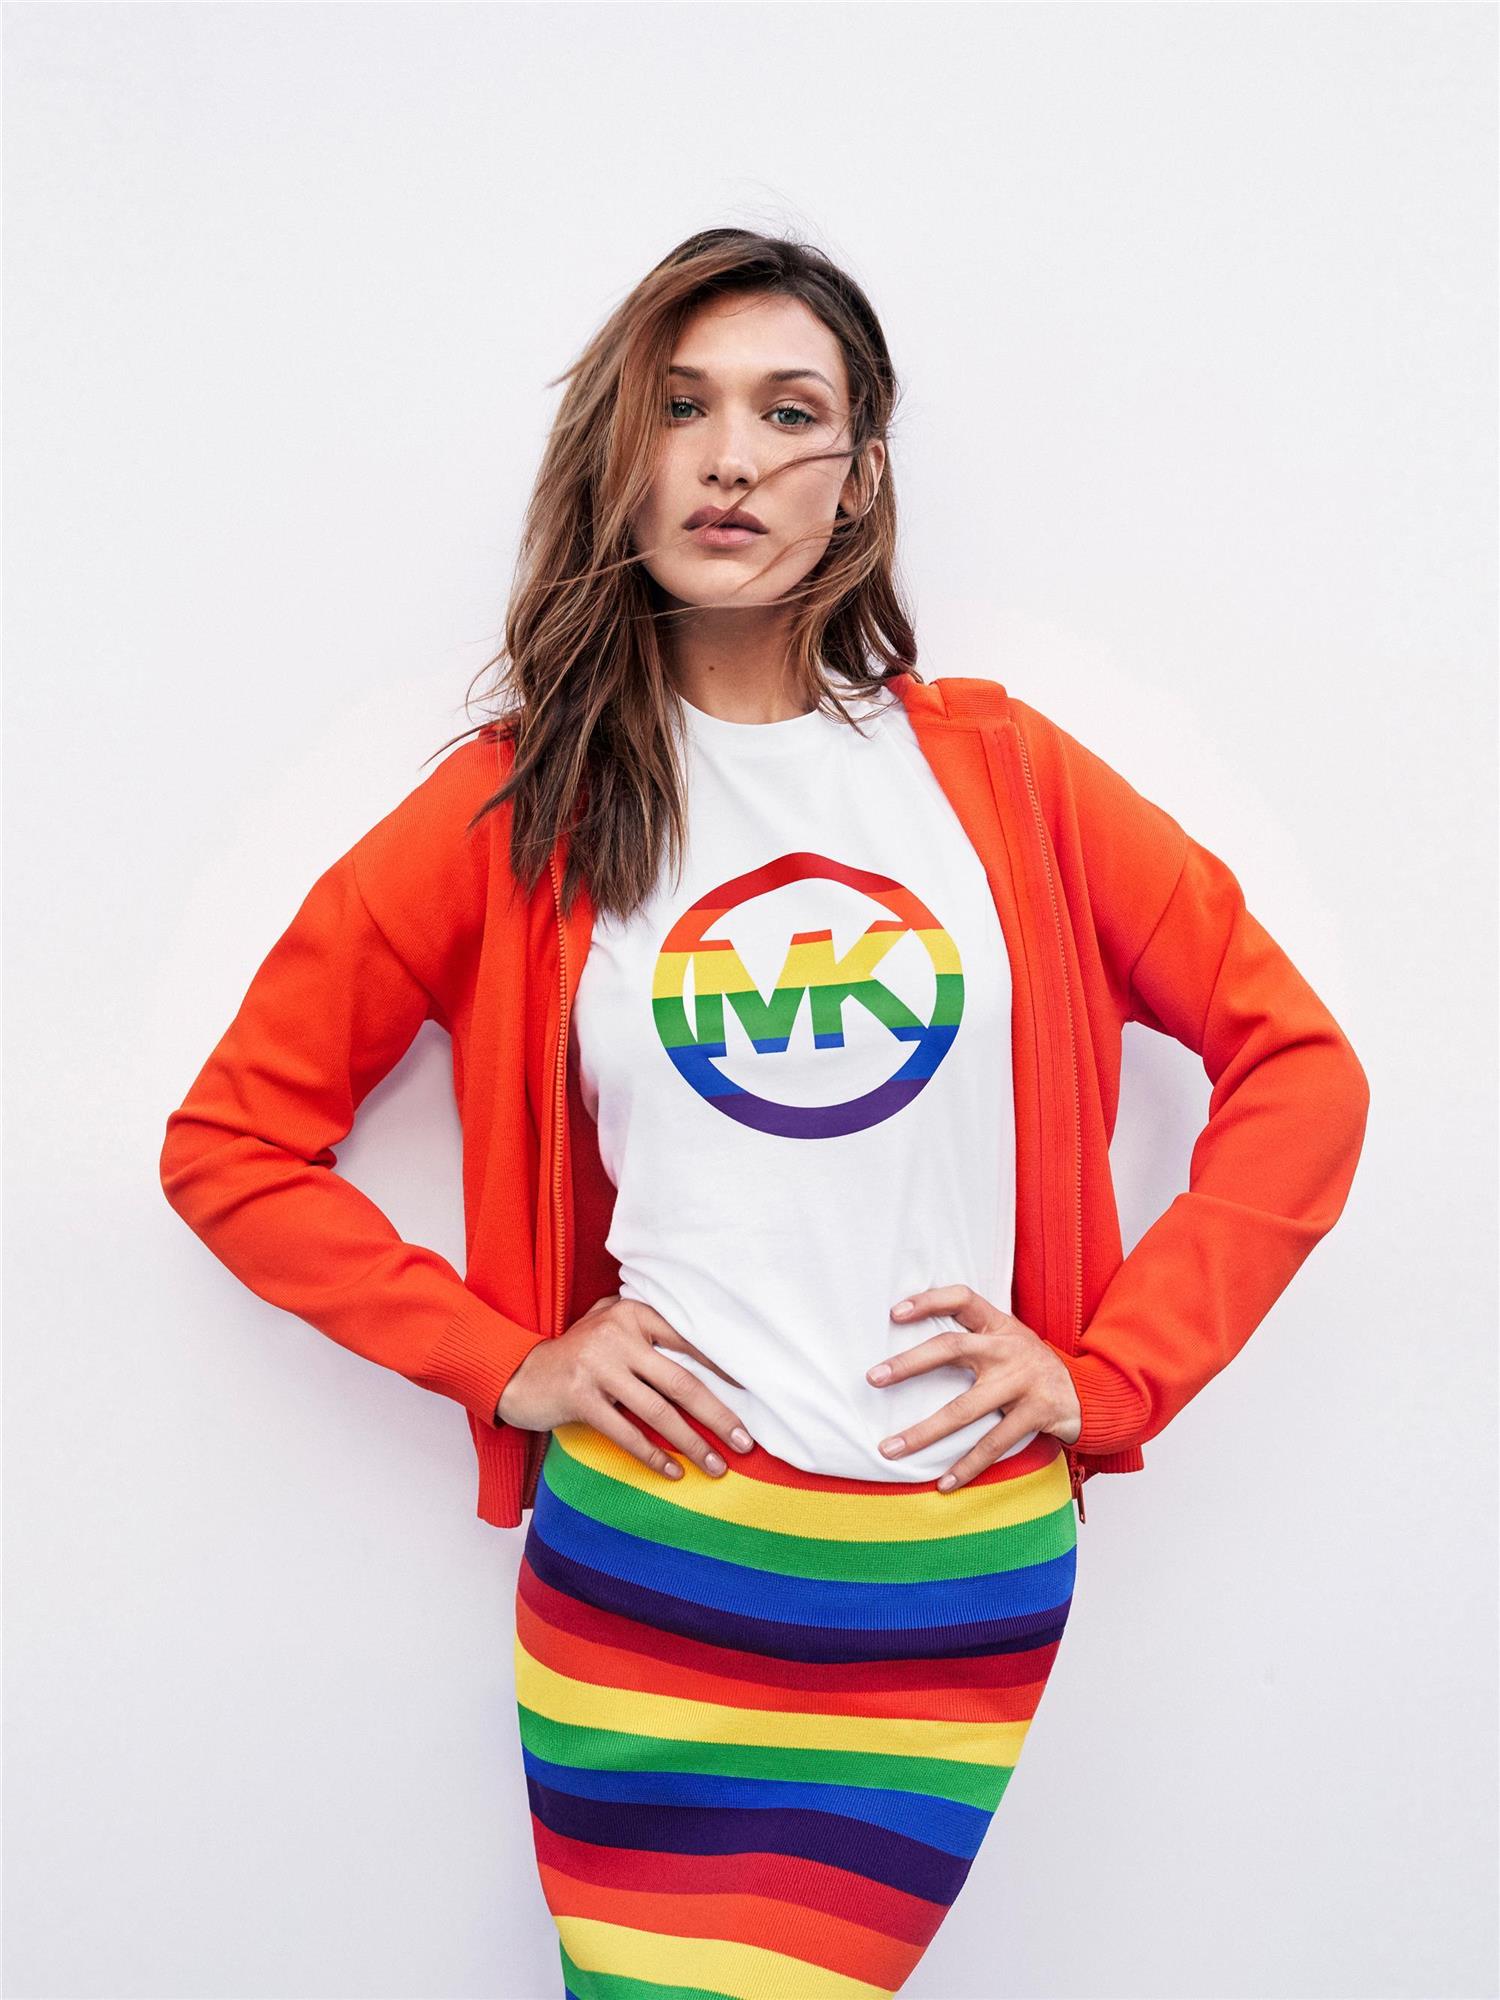 2-Michael Kors. #MKGO Rainbow, Bella Hadid High Resolution. Camiseta con estampado del orgullo